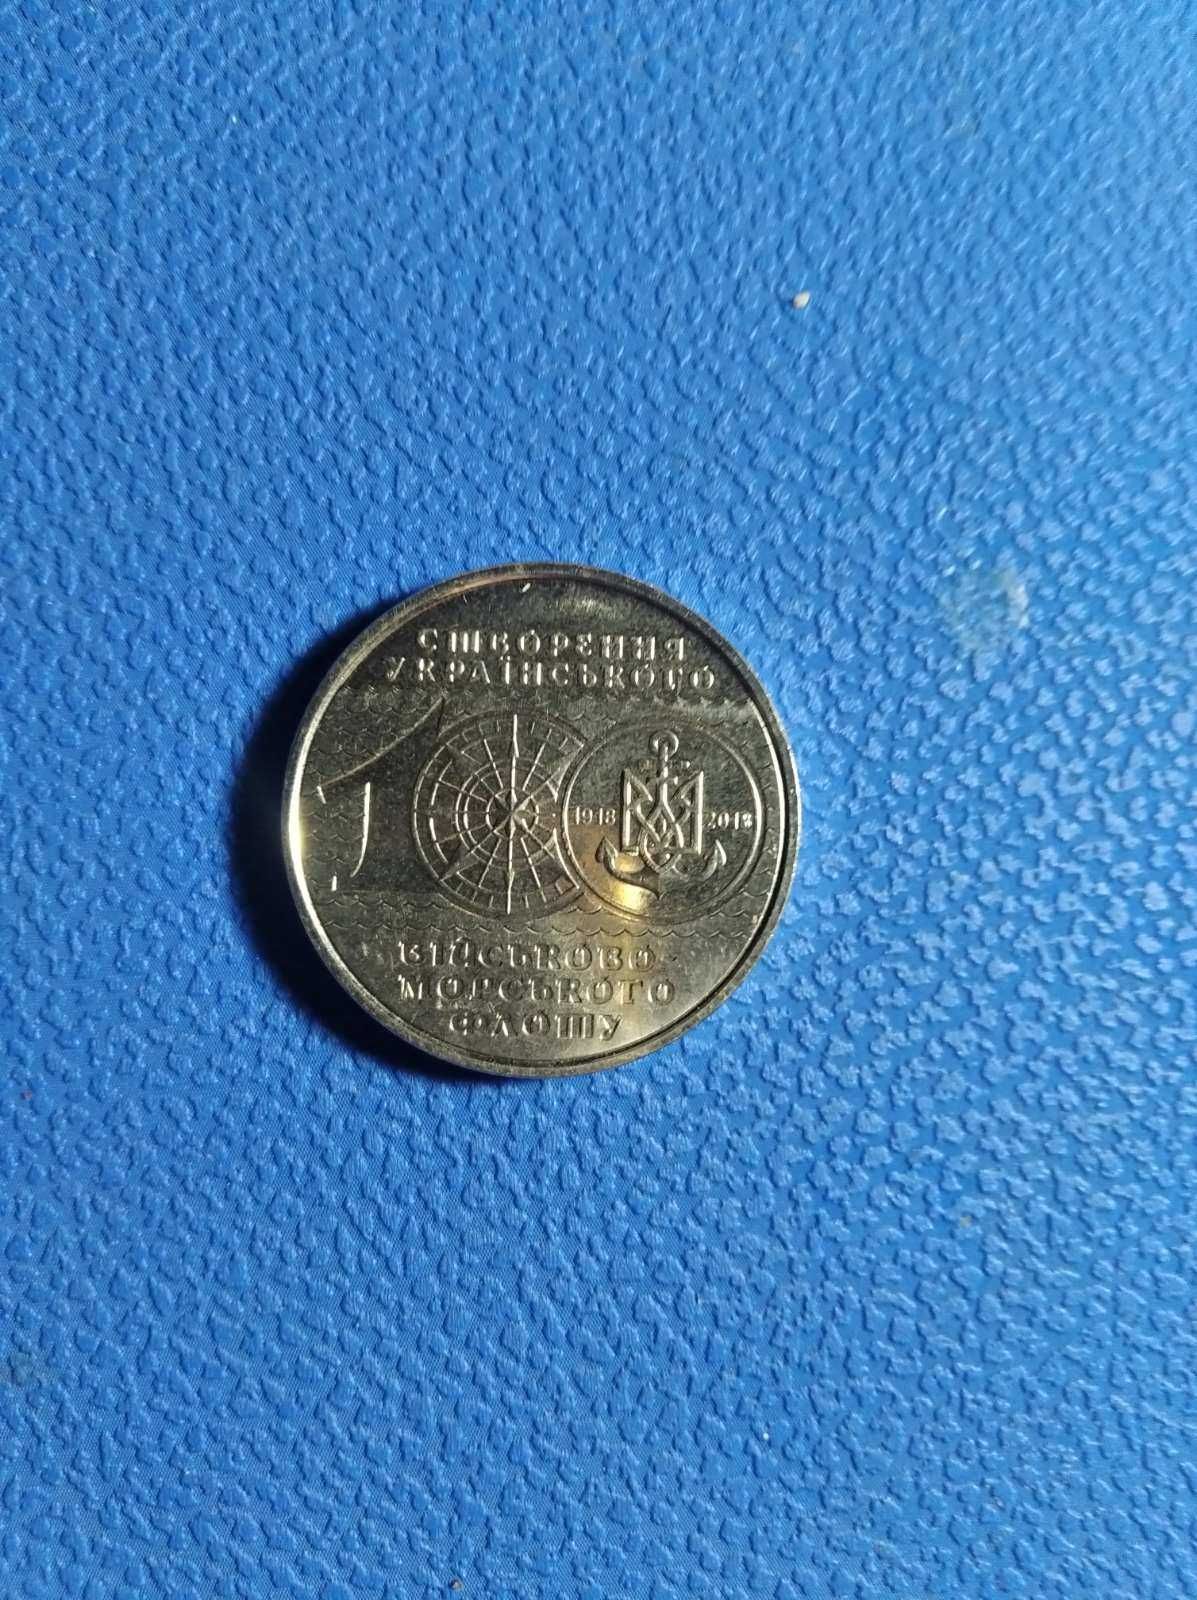 лімітована монета 10 гривень на честь 100 річчя вій-ково мор-го флоту